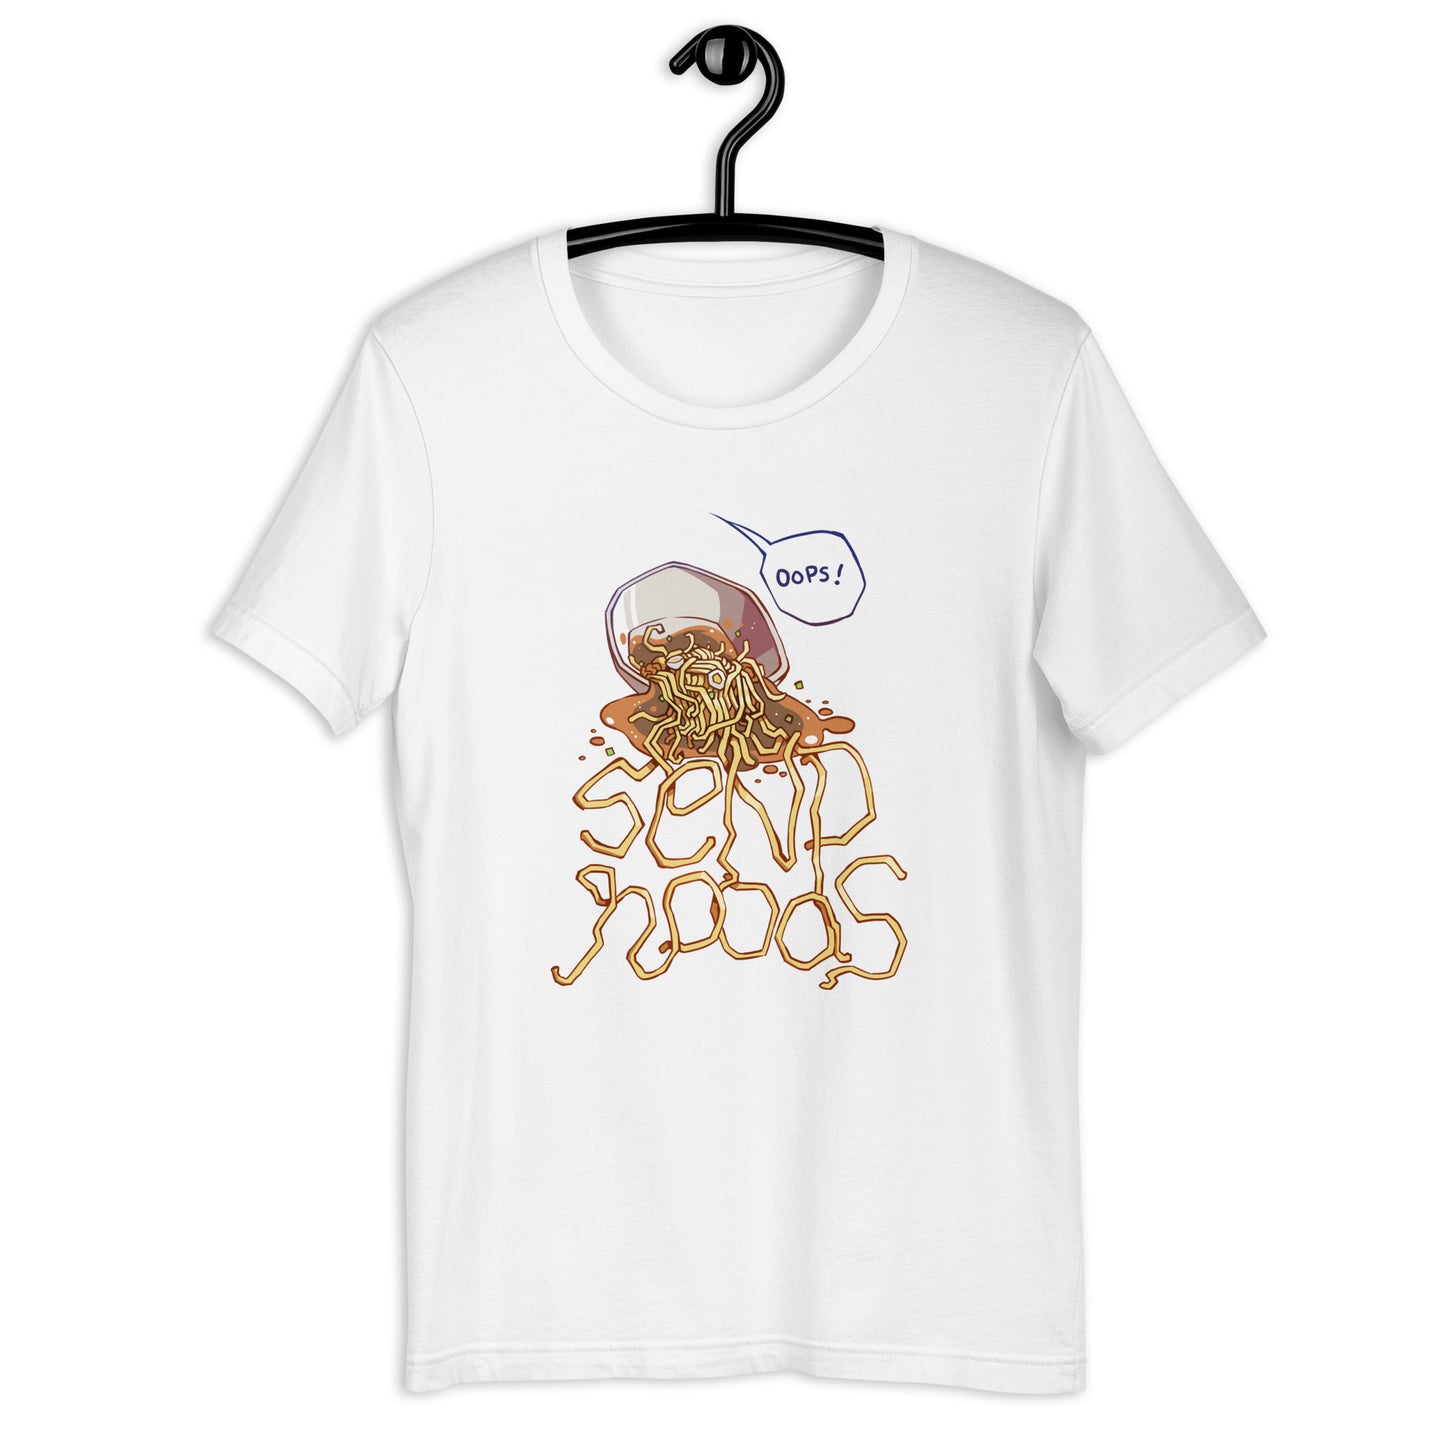 Noodle Empire T-Shirt: Send Noods